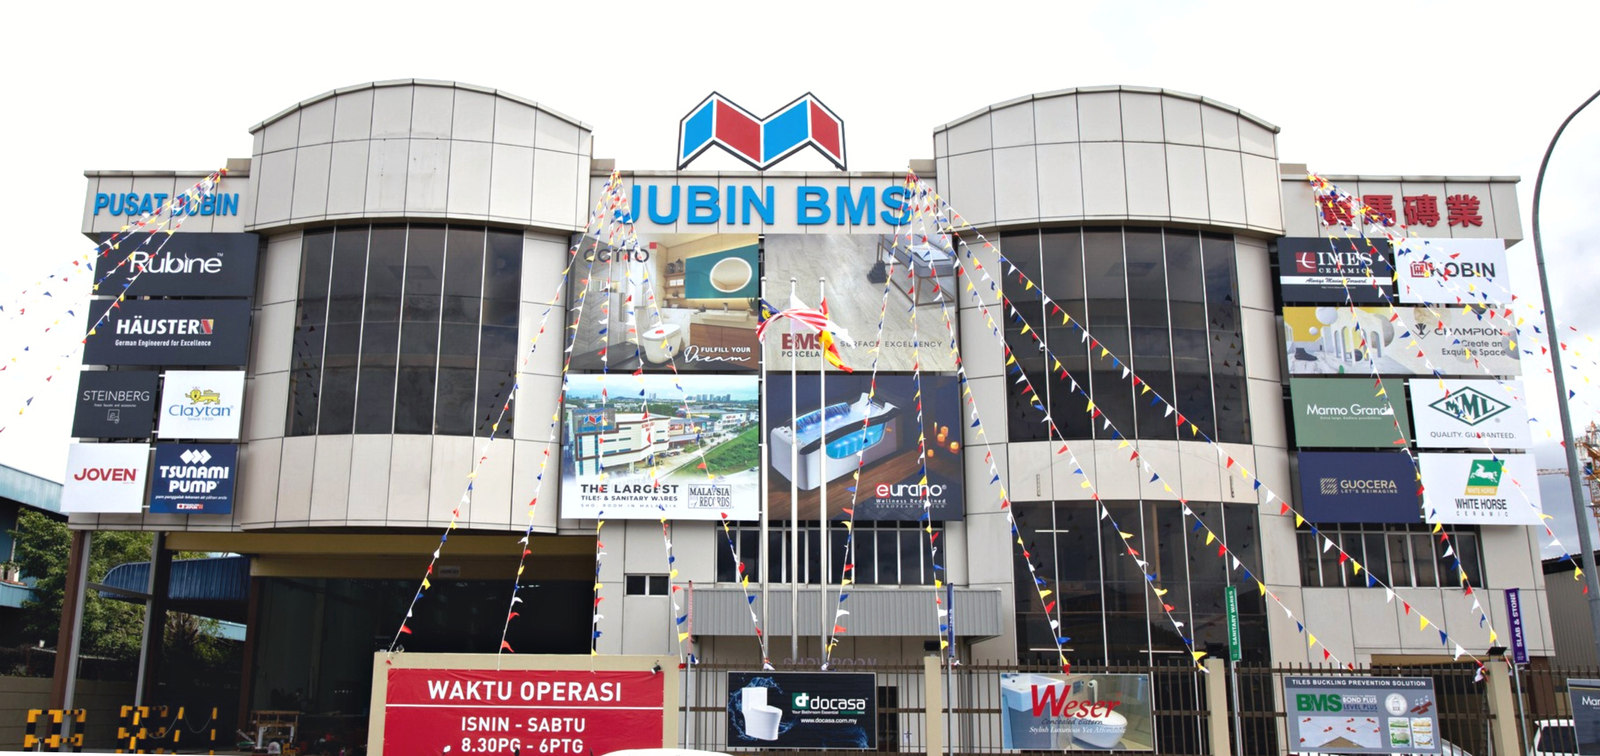 Jubin's new branch in Kota Damansara